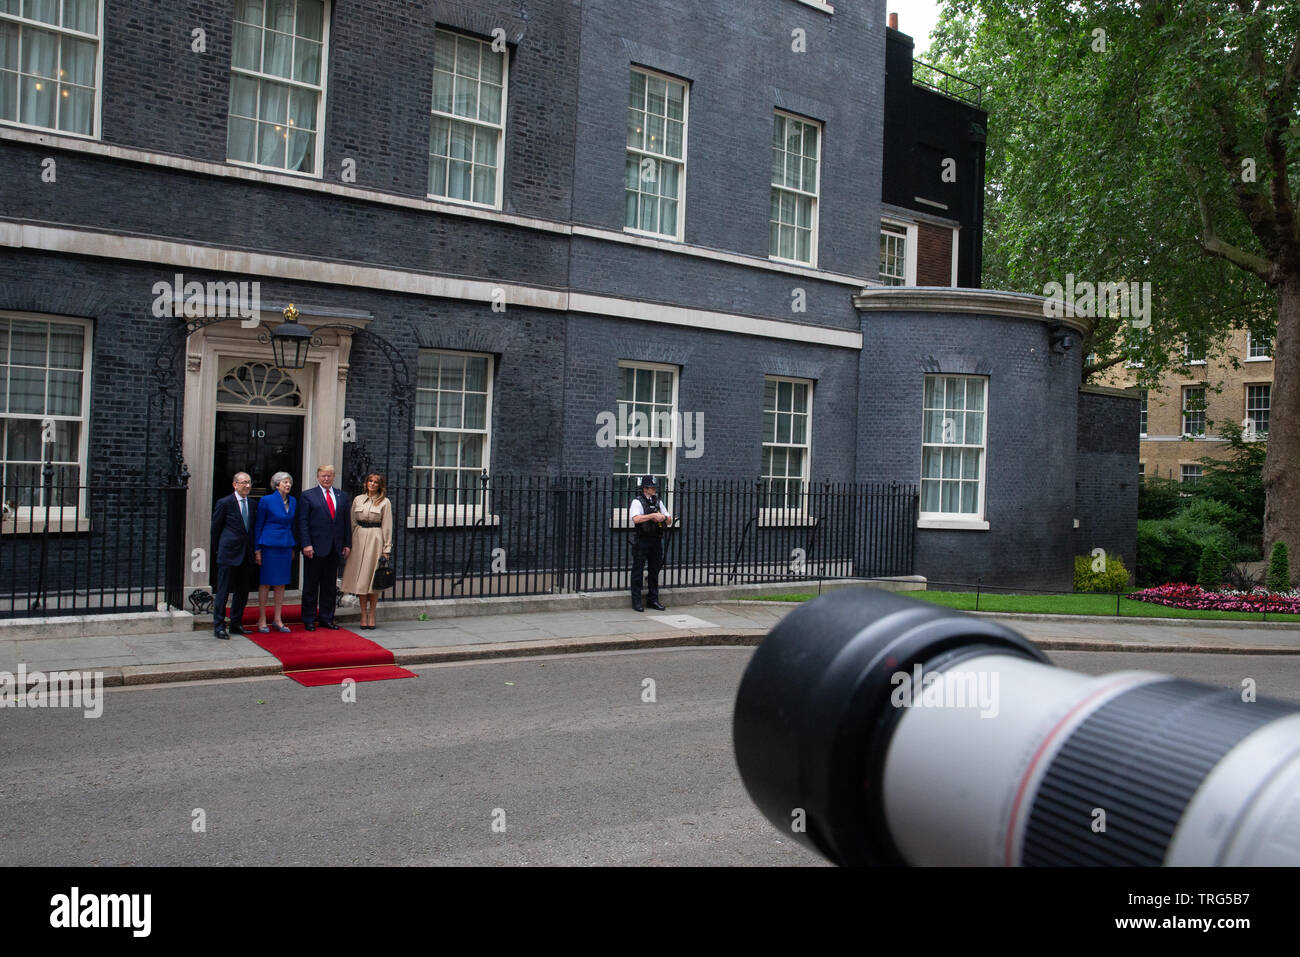 Philip peut, Theresa May, Donald Trump et Melania Trump sur les marches de 10 Downing Street comme le président bénéficie d'une visite d'Etat en Grande-Bretagne. Banque D'Images